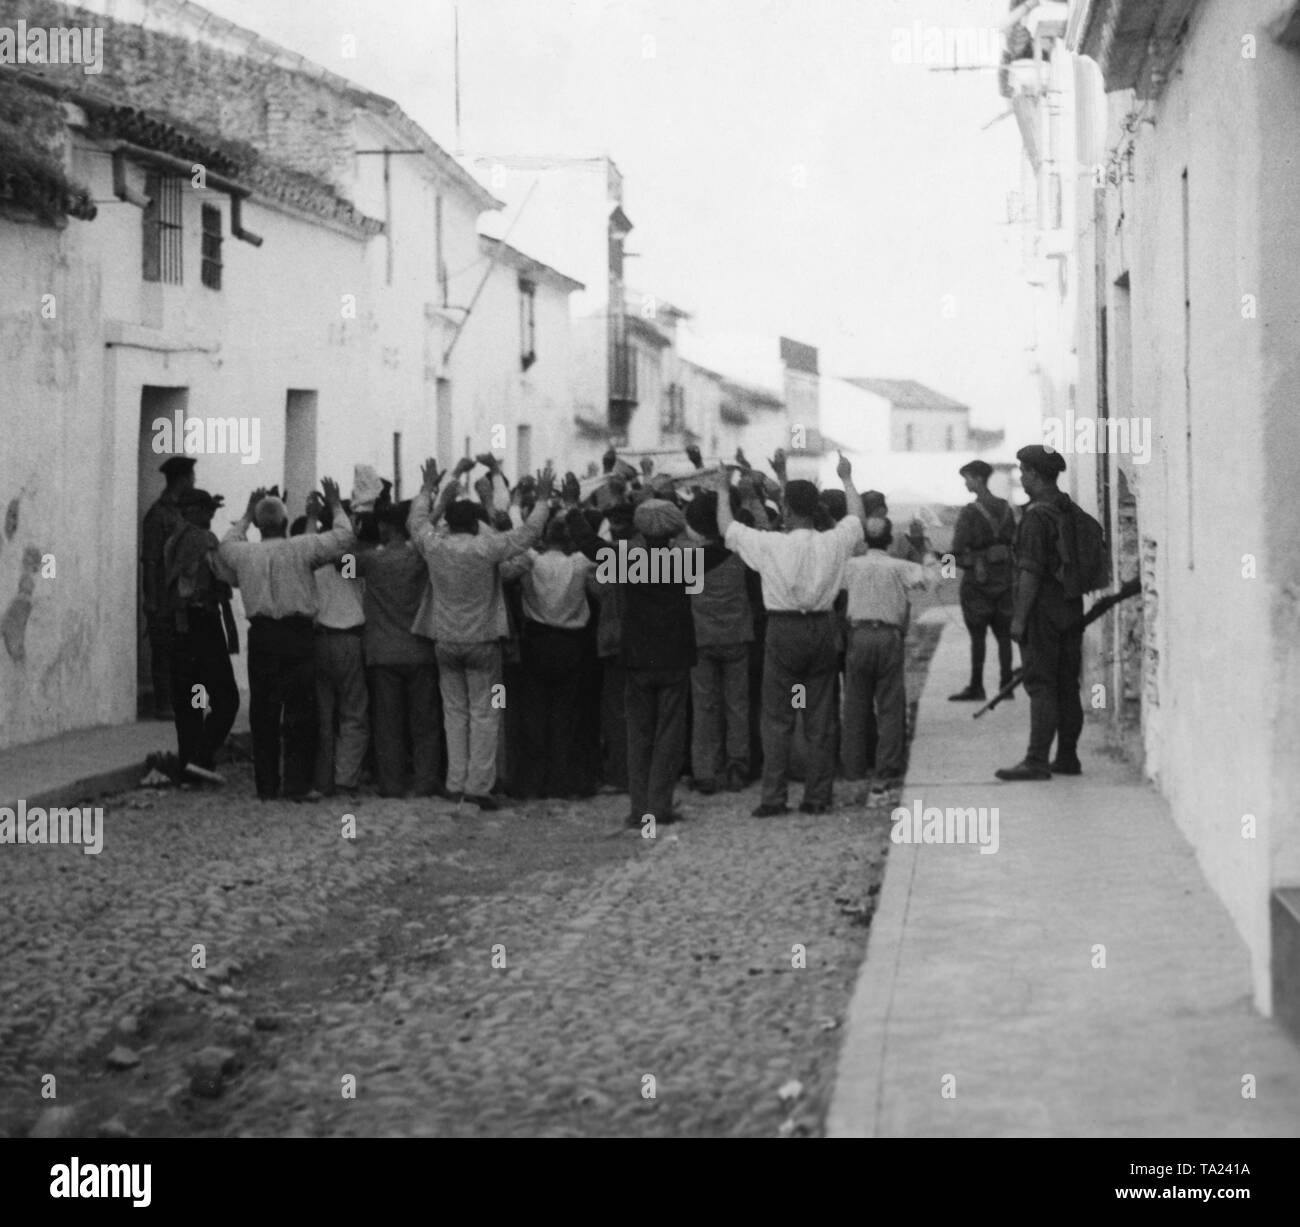 Republikanische Unterstützer der Regierung sind gemeinsam mit erhobenen Händen von spanischen Soldaten in einer kleinen Straße in einem Dorf in der Nähe von Sevilla getrieben. Stockfoto